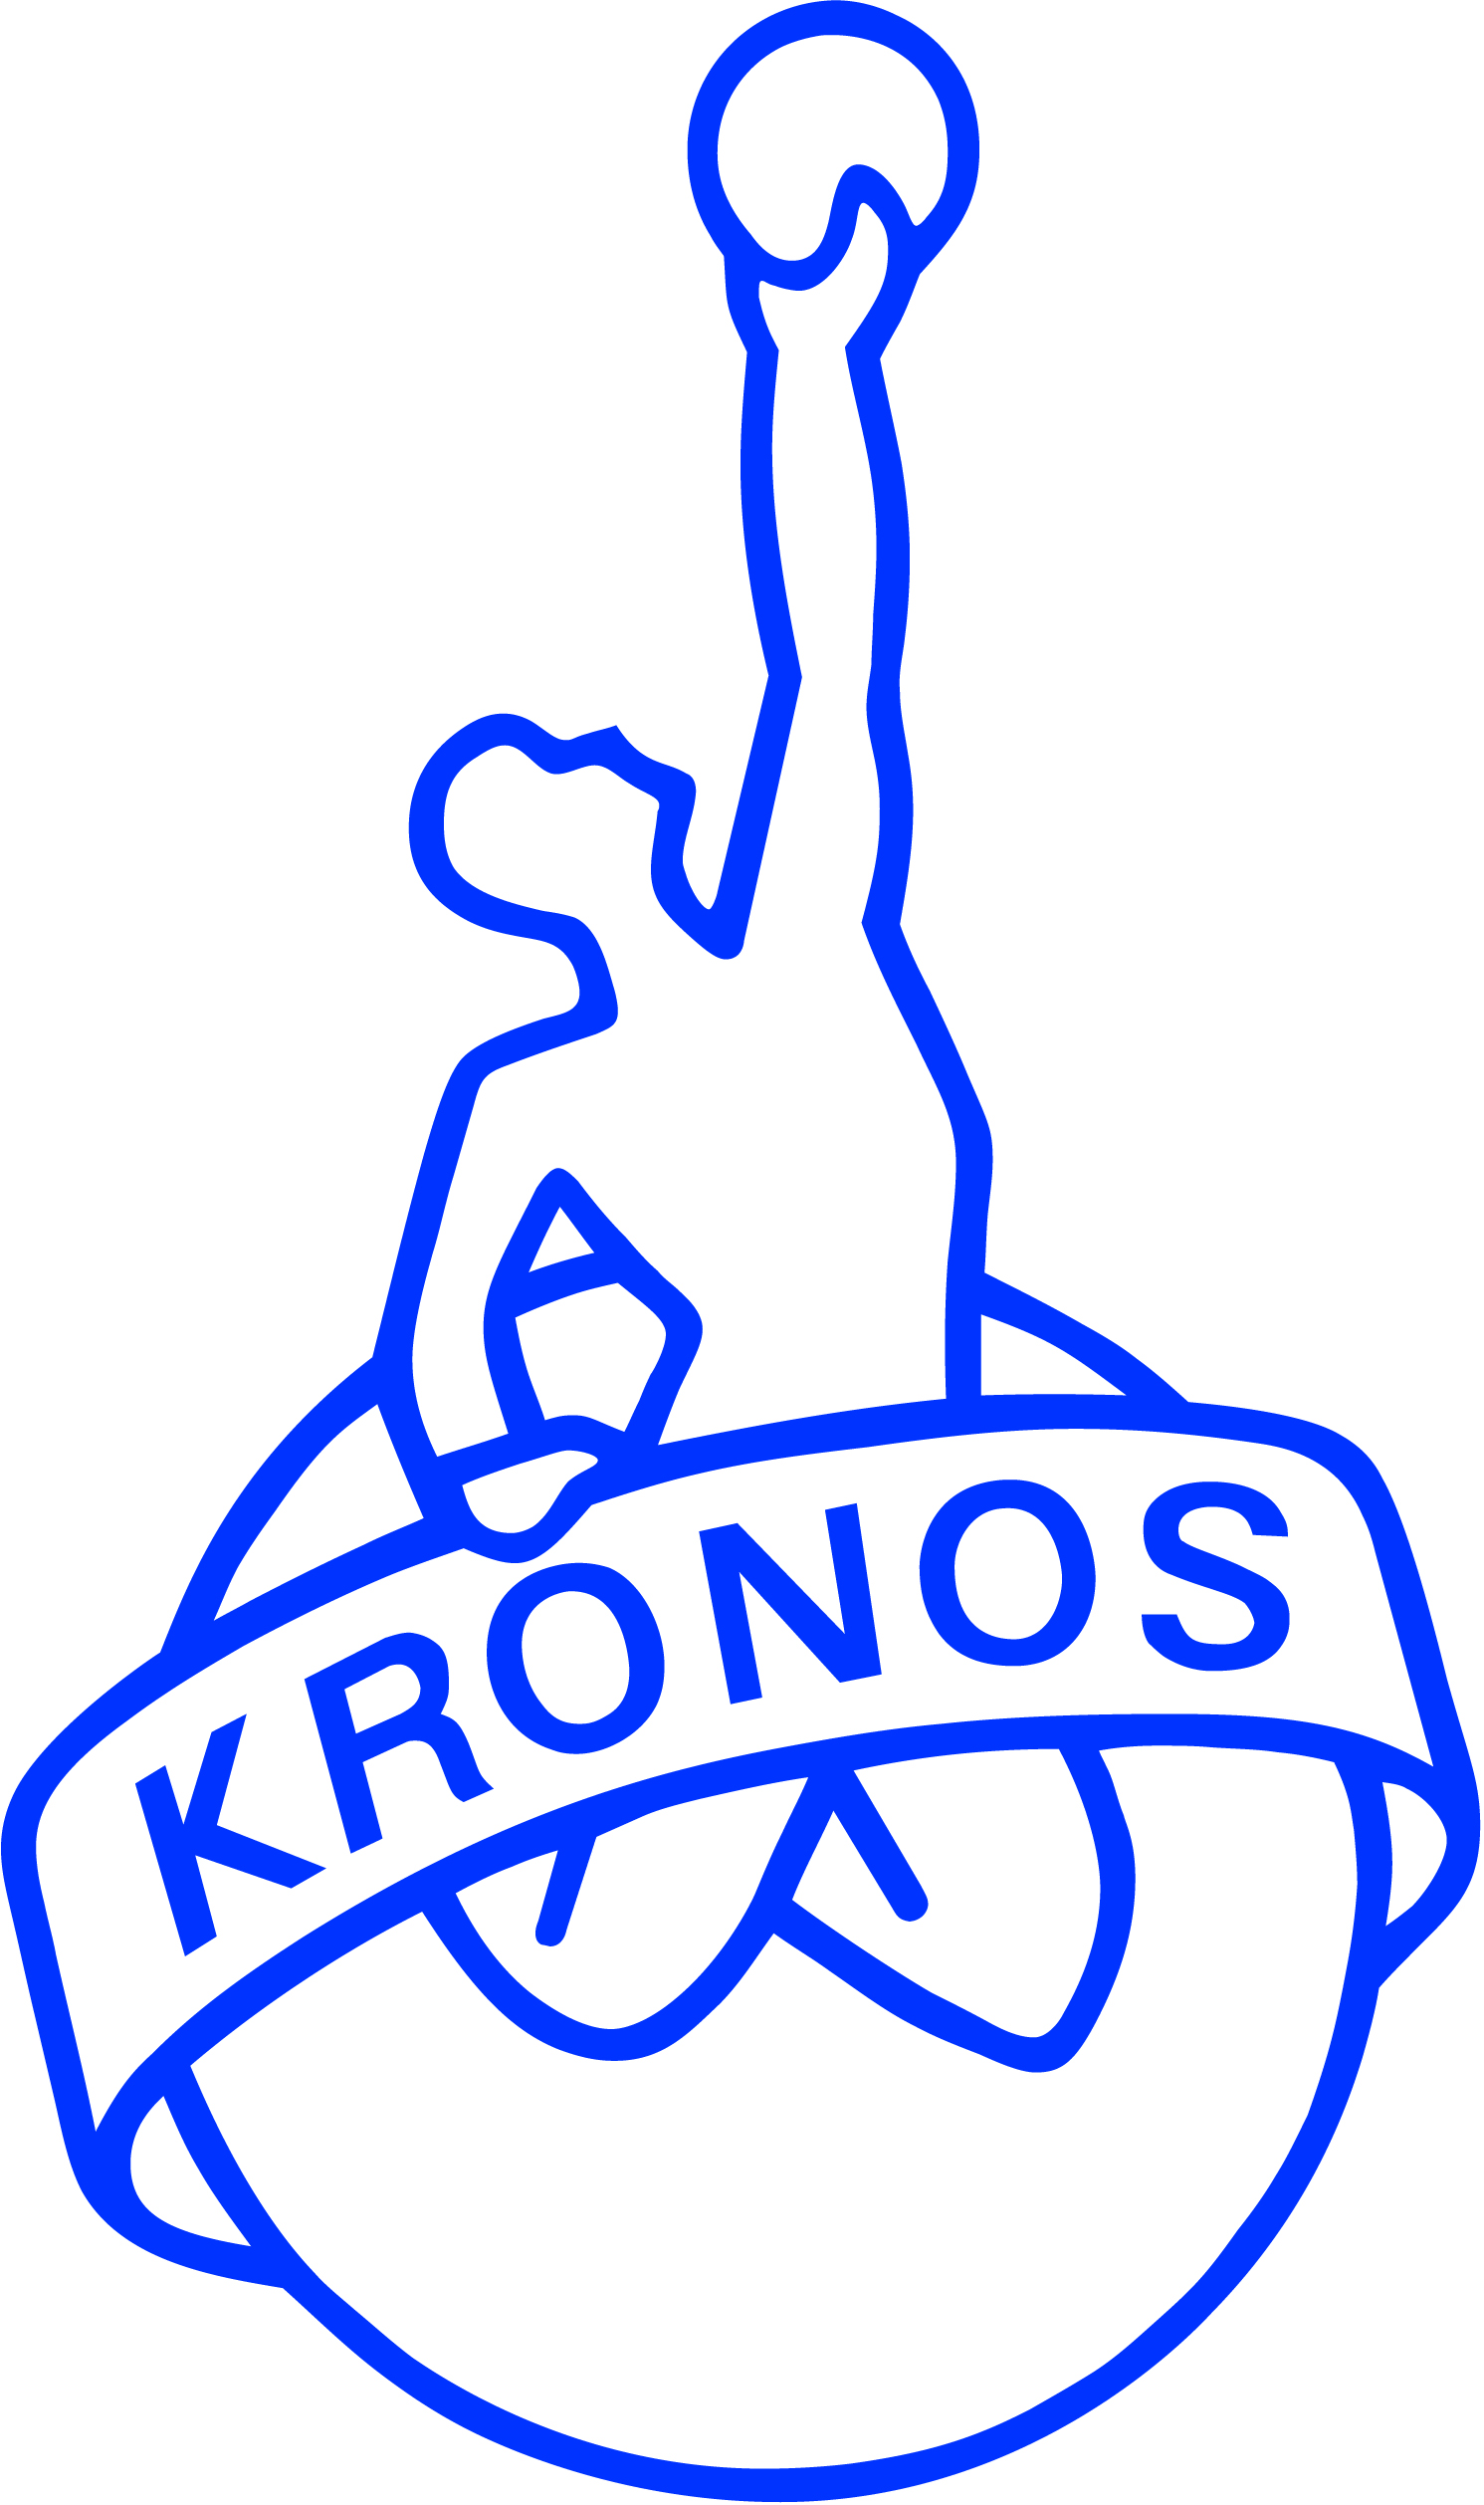 KRONOS logo jpeg